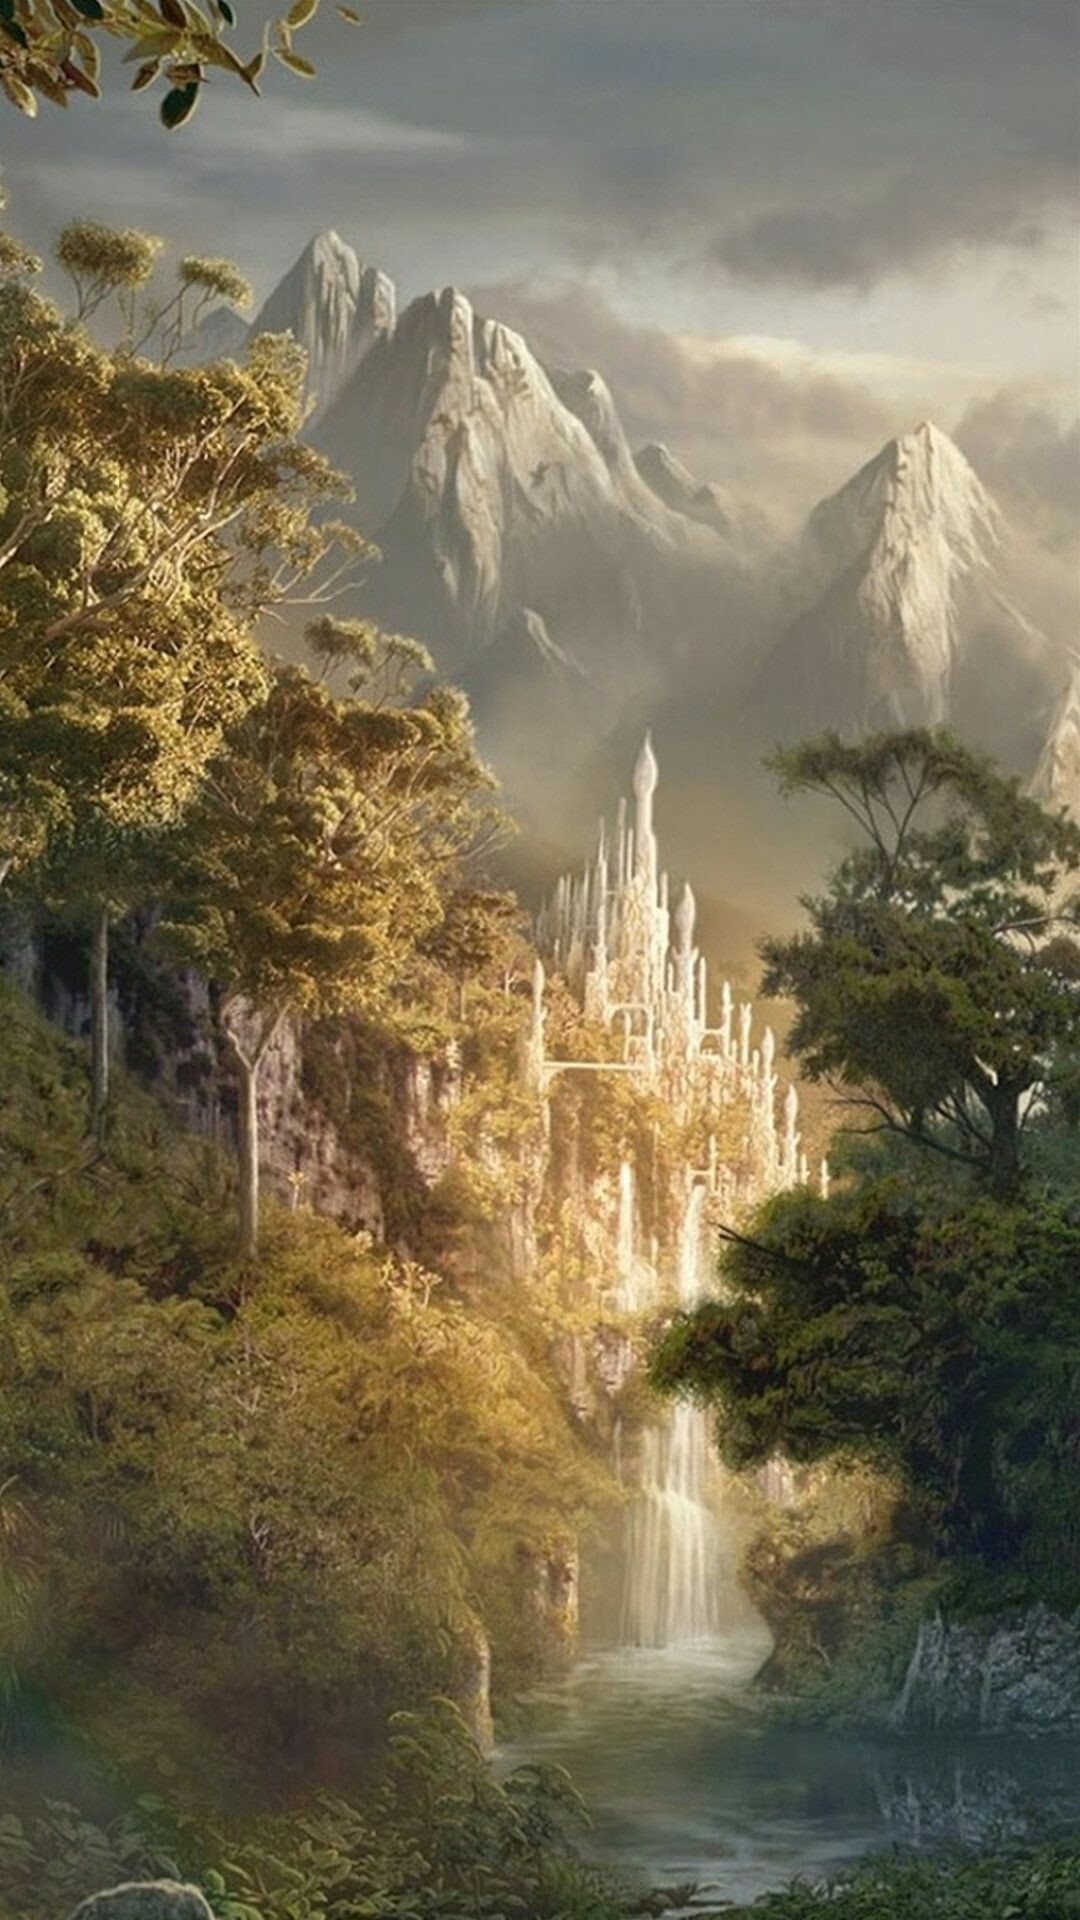 The Hobbit: Trilogy by an Academy Award-winning filmmaker Peter Jackson. 1080x1920 Full HD Wallpaper.